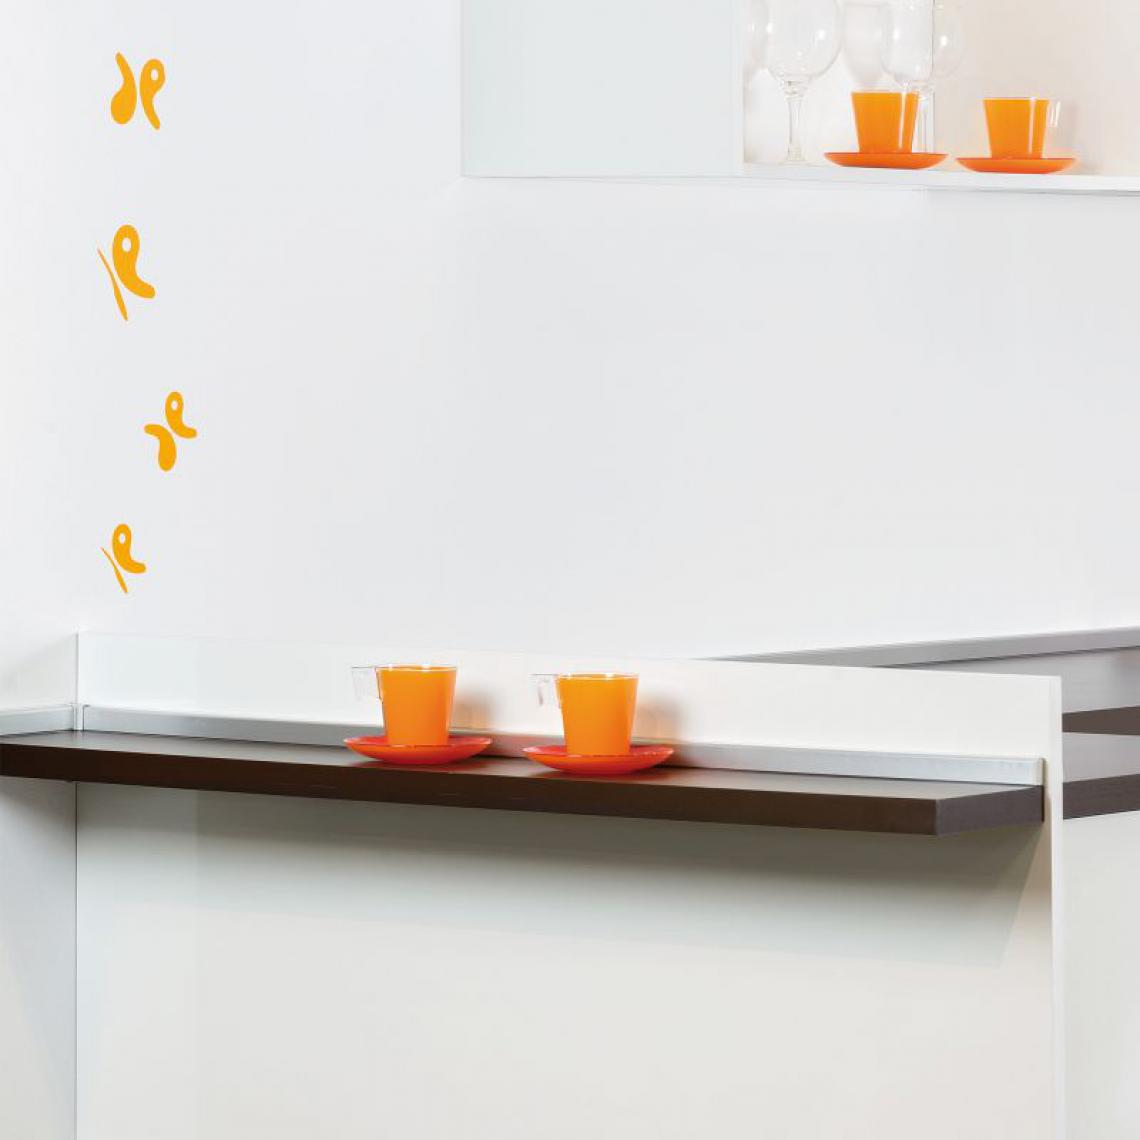 Inconnu - (1 Kit) Profil d'étachéité de cuisine rectangulaire, avec accessoires d'installation, 4,7 m, plastique, anodisé satiné. - Plinthe carrelage